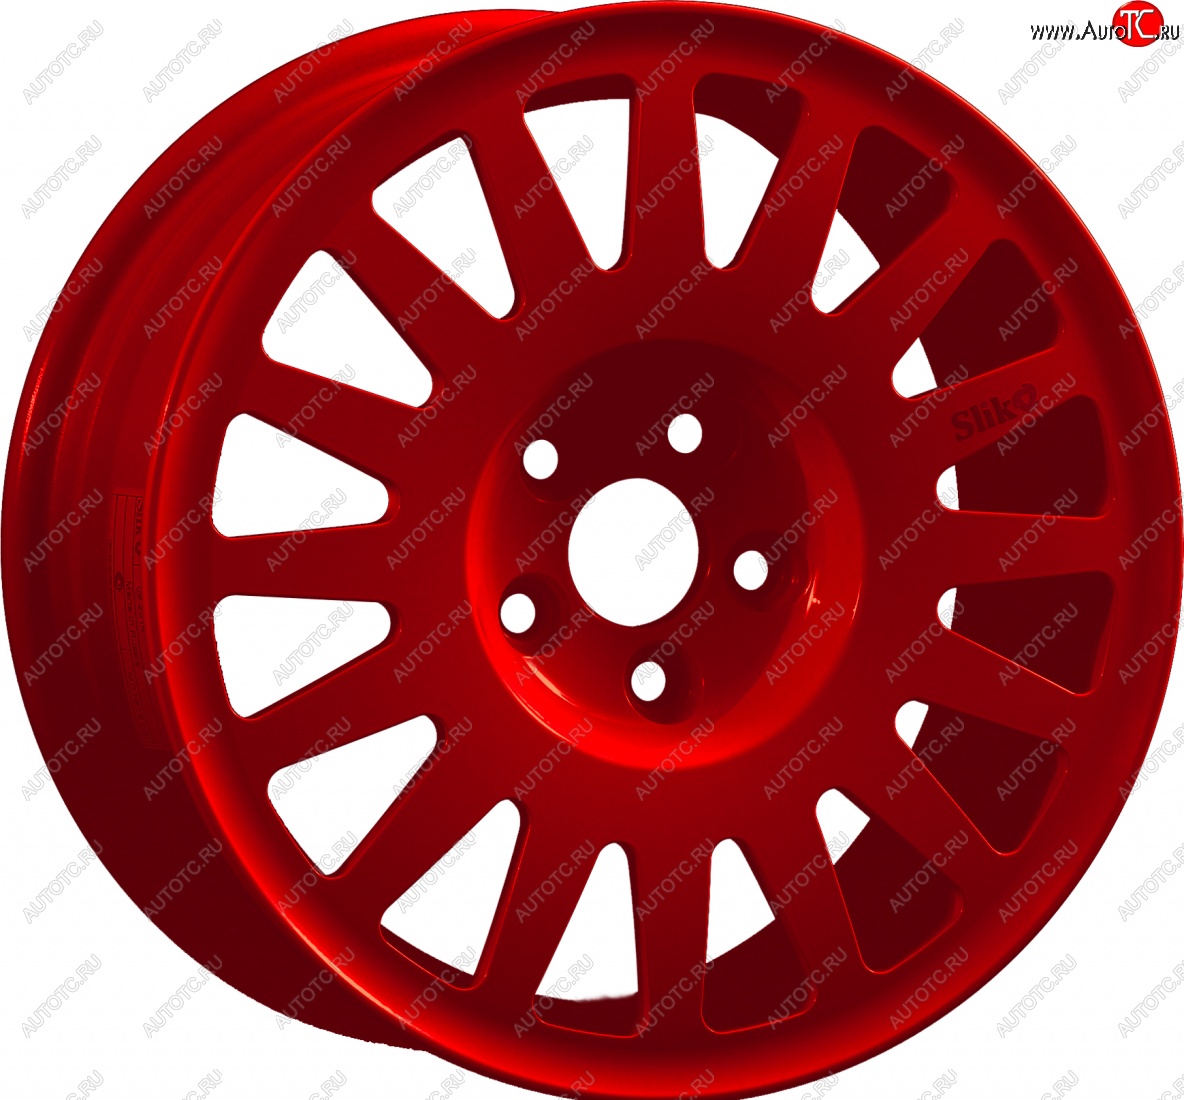 15 599 р. Кованый диск Slik Classic Sport L-1823S 6.5x15   (Красный (RED))